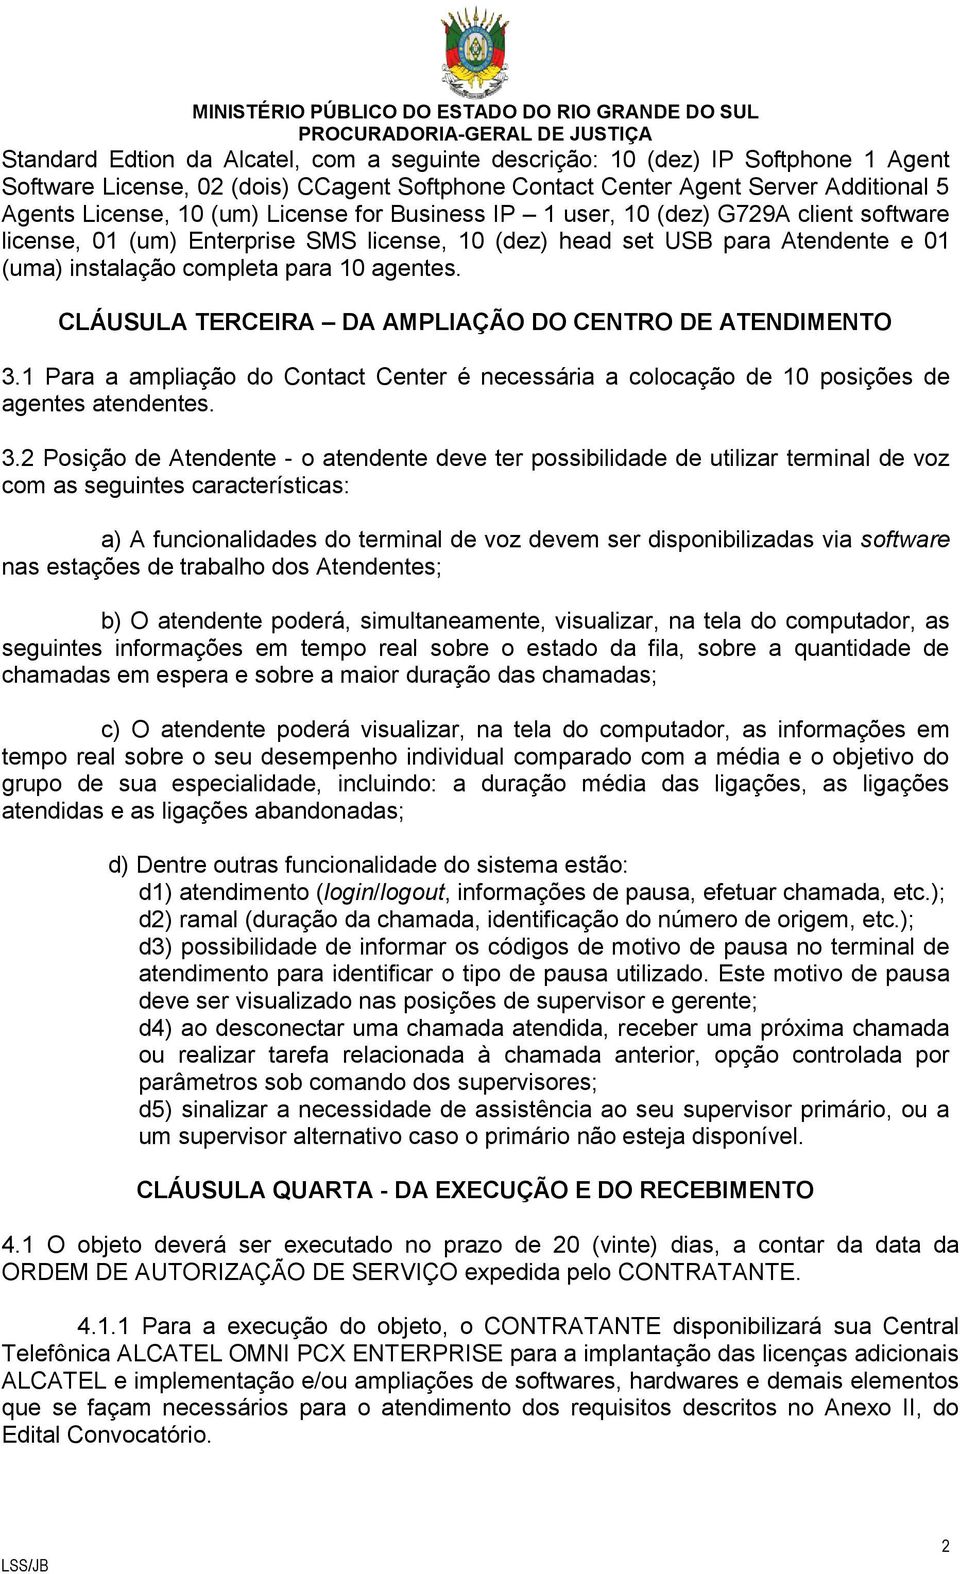 CLÁUSULA TERCEIRA DA AMPLIAÇÃO DO CENTRO DE ATENDIMENTO 3.